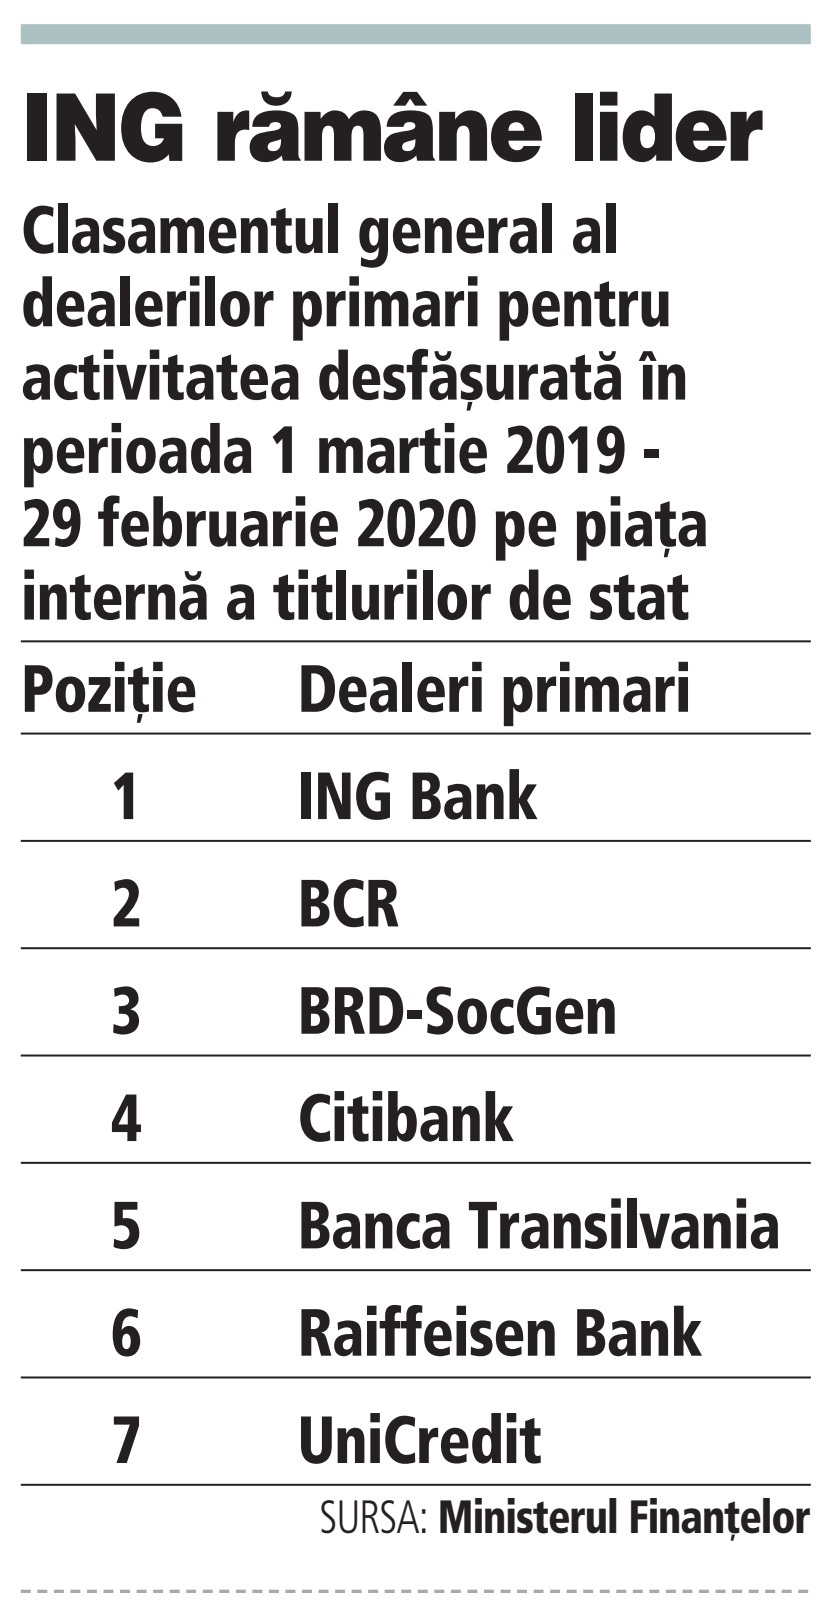 Topul dealerilor primari în primele două luni din 2020: ING a fost cel mai mare jucător de pe piaţa titlurilor de stat. BCR şi BRD ocupă următoarele poziţii pe podium